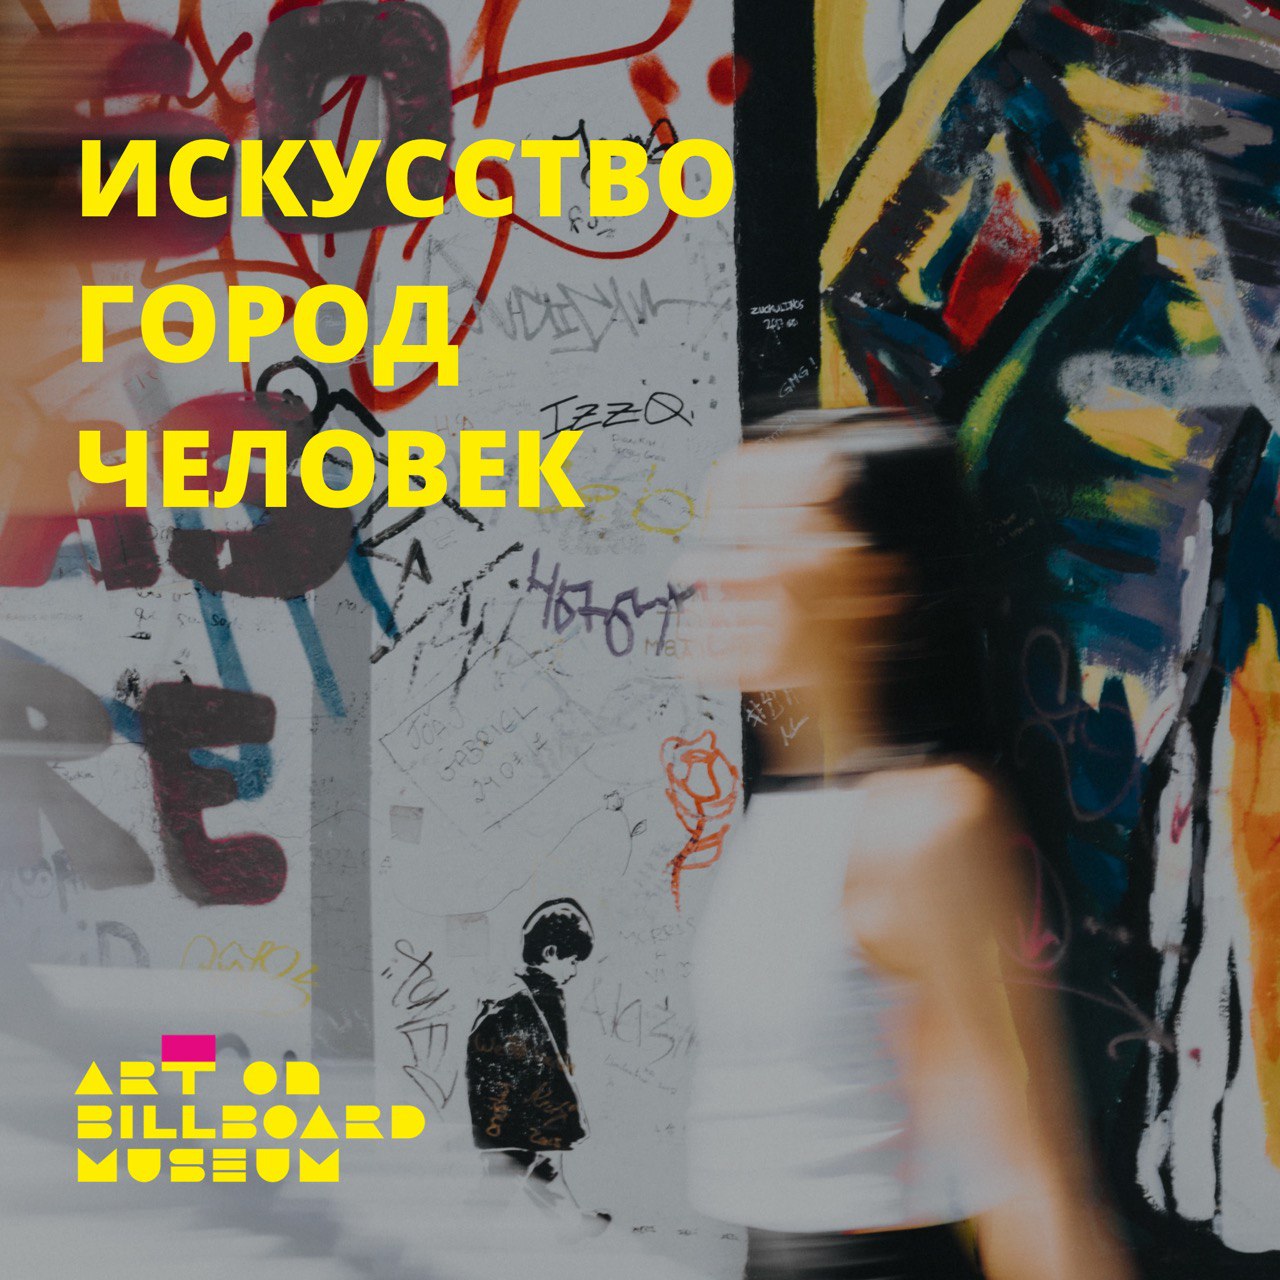 Новосибирск фотографический: продолжаются уличные выставки проекта Art on billboard museum